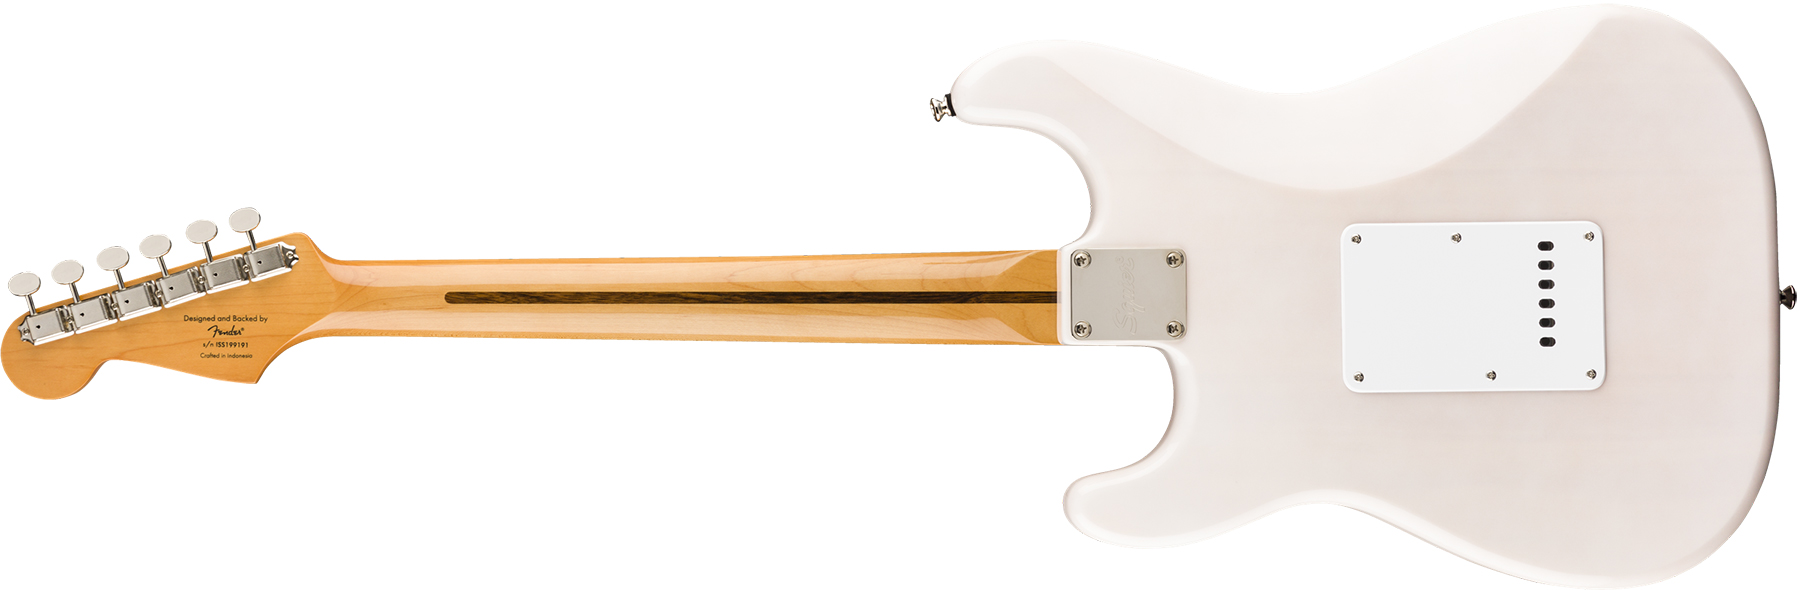 Squier Strat '50s Classic Vibe 2019 Mn 2019 - White Blonde - Elektrische gitaar in Str-vorm - Variation 1